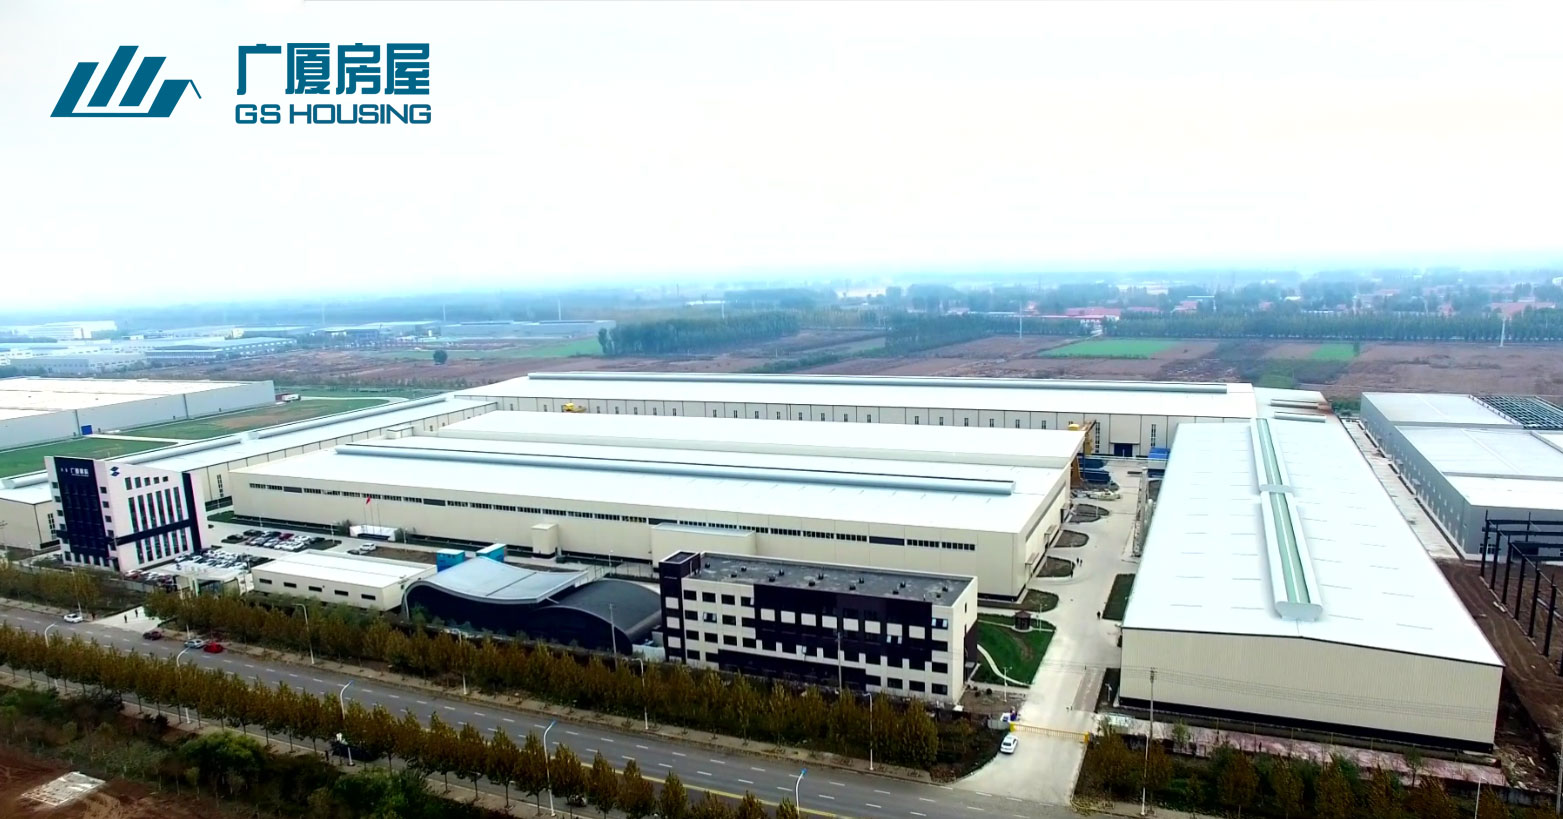 GS HOUSING – Çin'in kuzeyindeki Tianjin üretim üssü (Çin'in en büyük 3 modüler ev fabrikası)